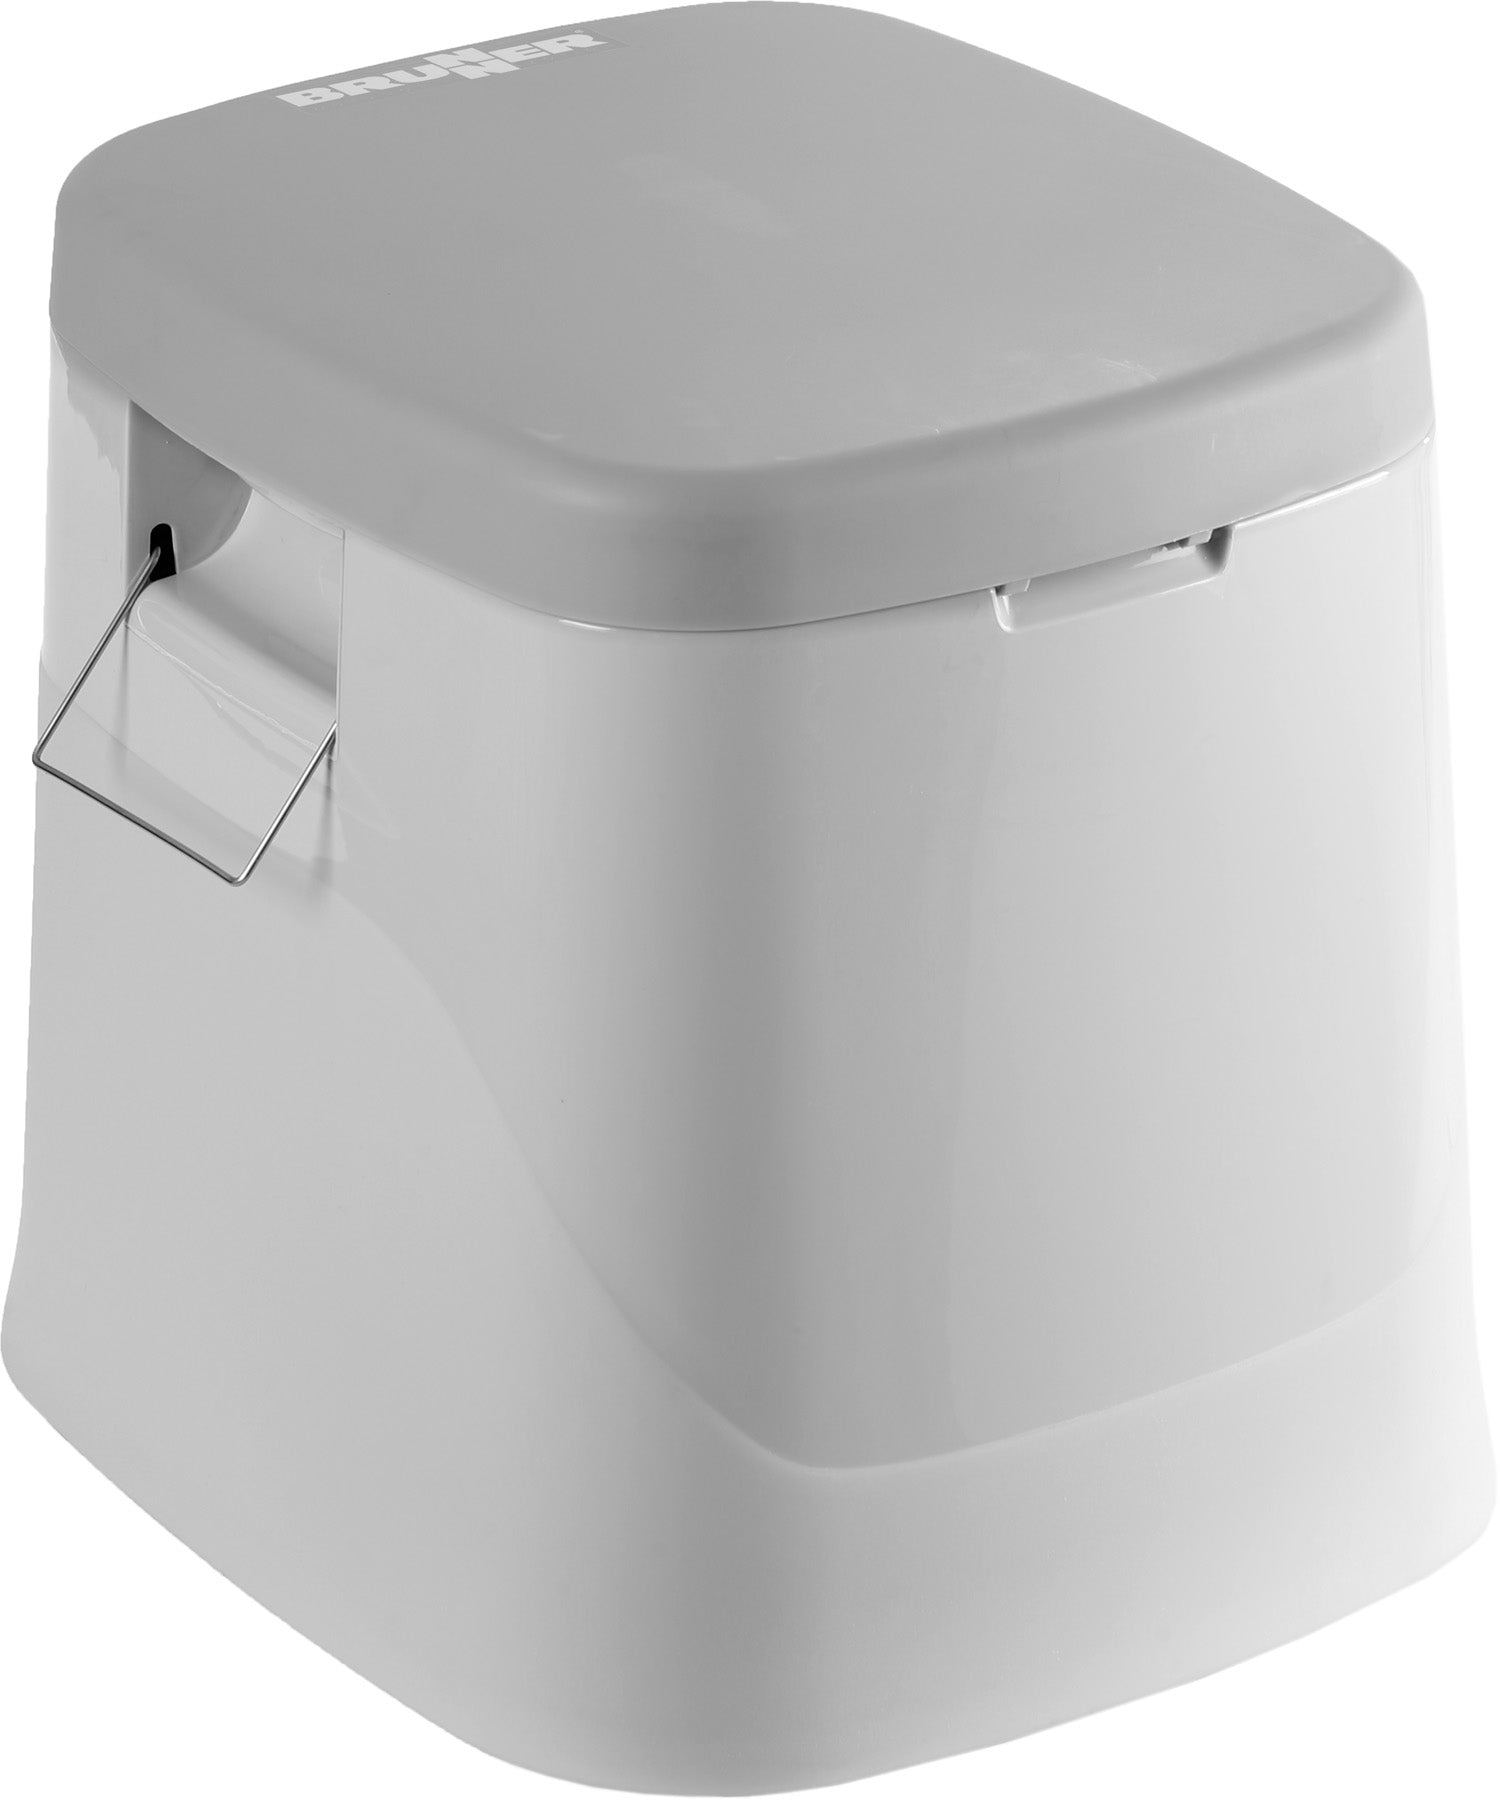 WC portatile da campeggio in plastica con recipiente con maniglia facile da  rimuovere e svuotare, volume 7 litri, 40 x 48 x H33 cm SK100647